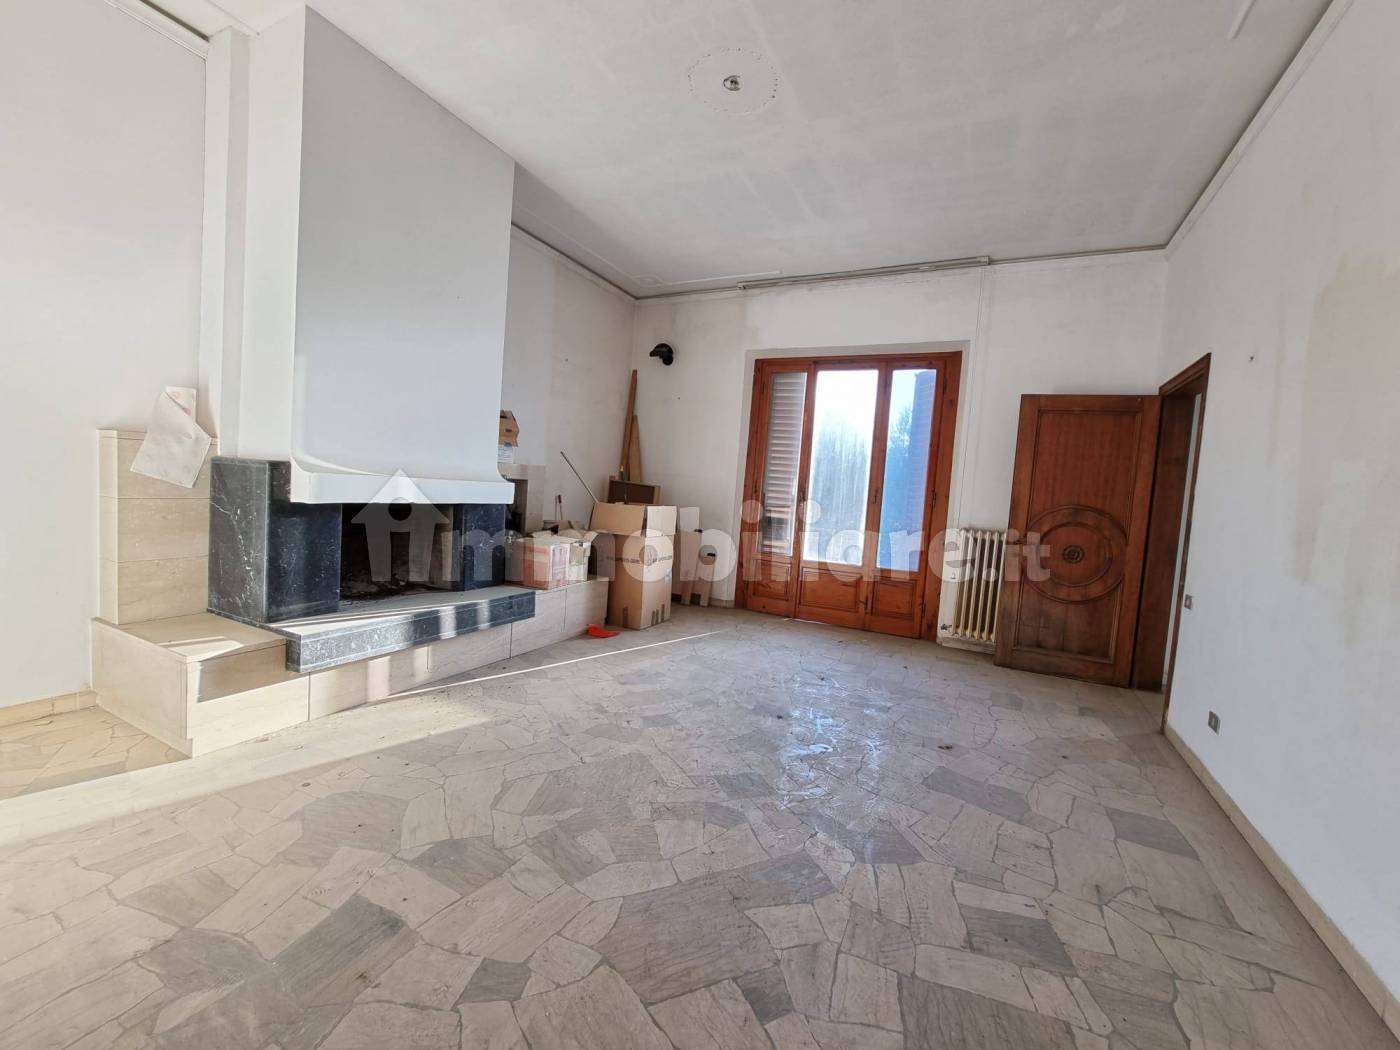 Appartamento in vendita a Montespertoli, 6 locali, prezzo € 240.000 | PortaleAgenzieImmobiliari.it